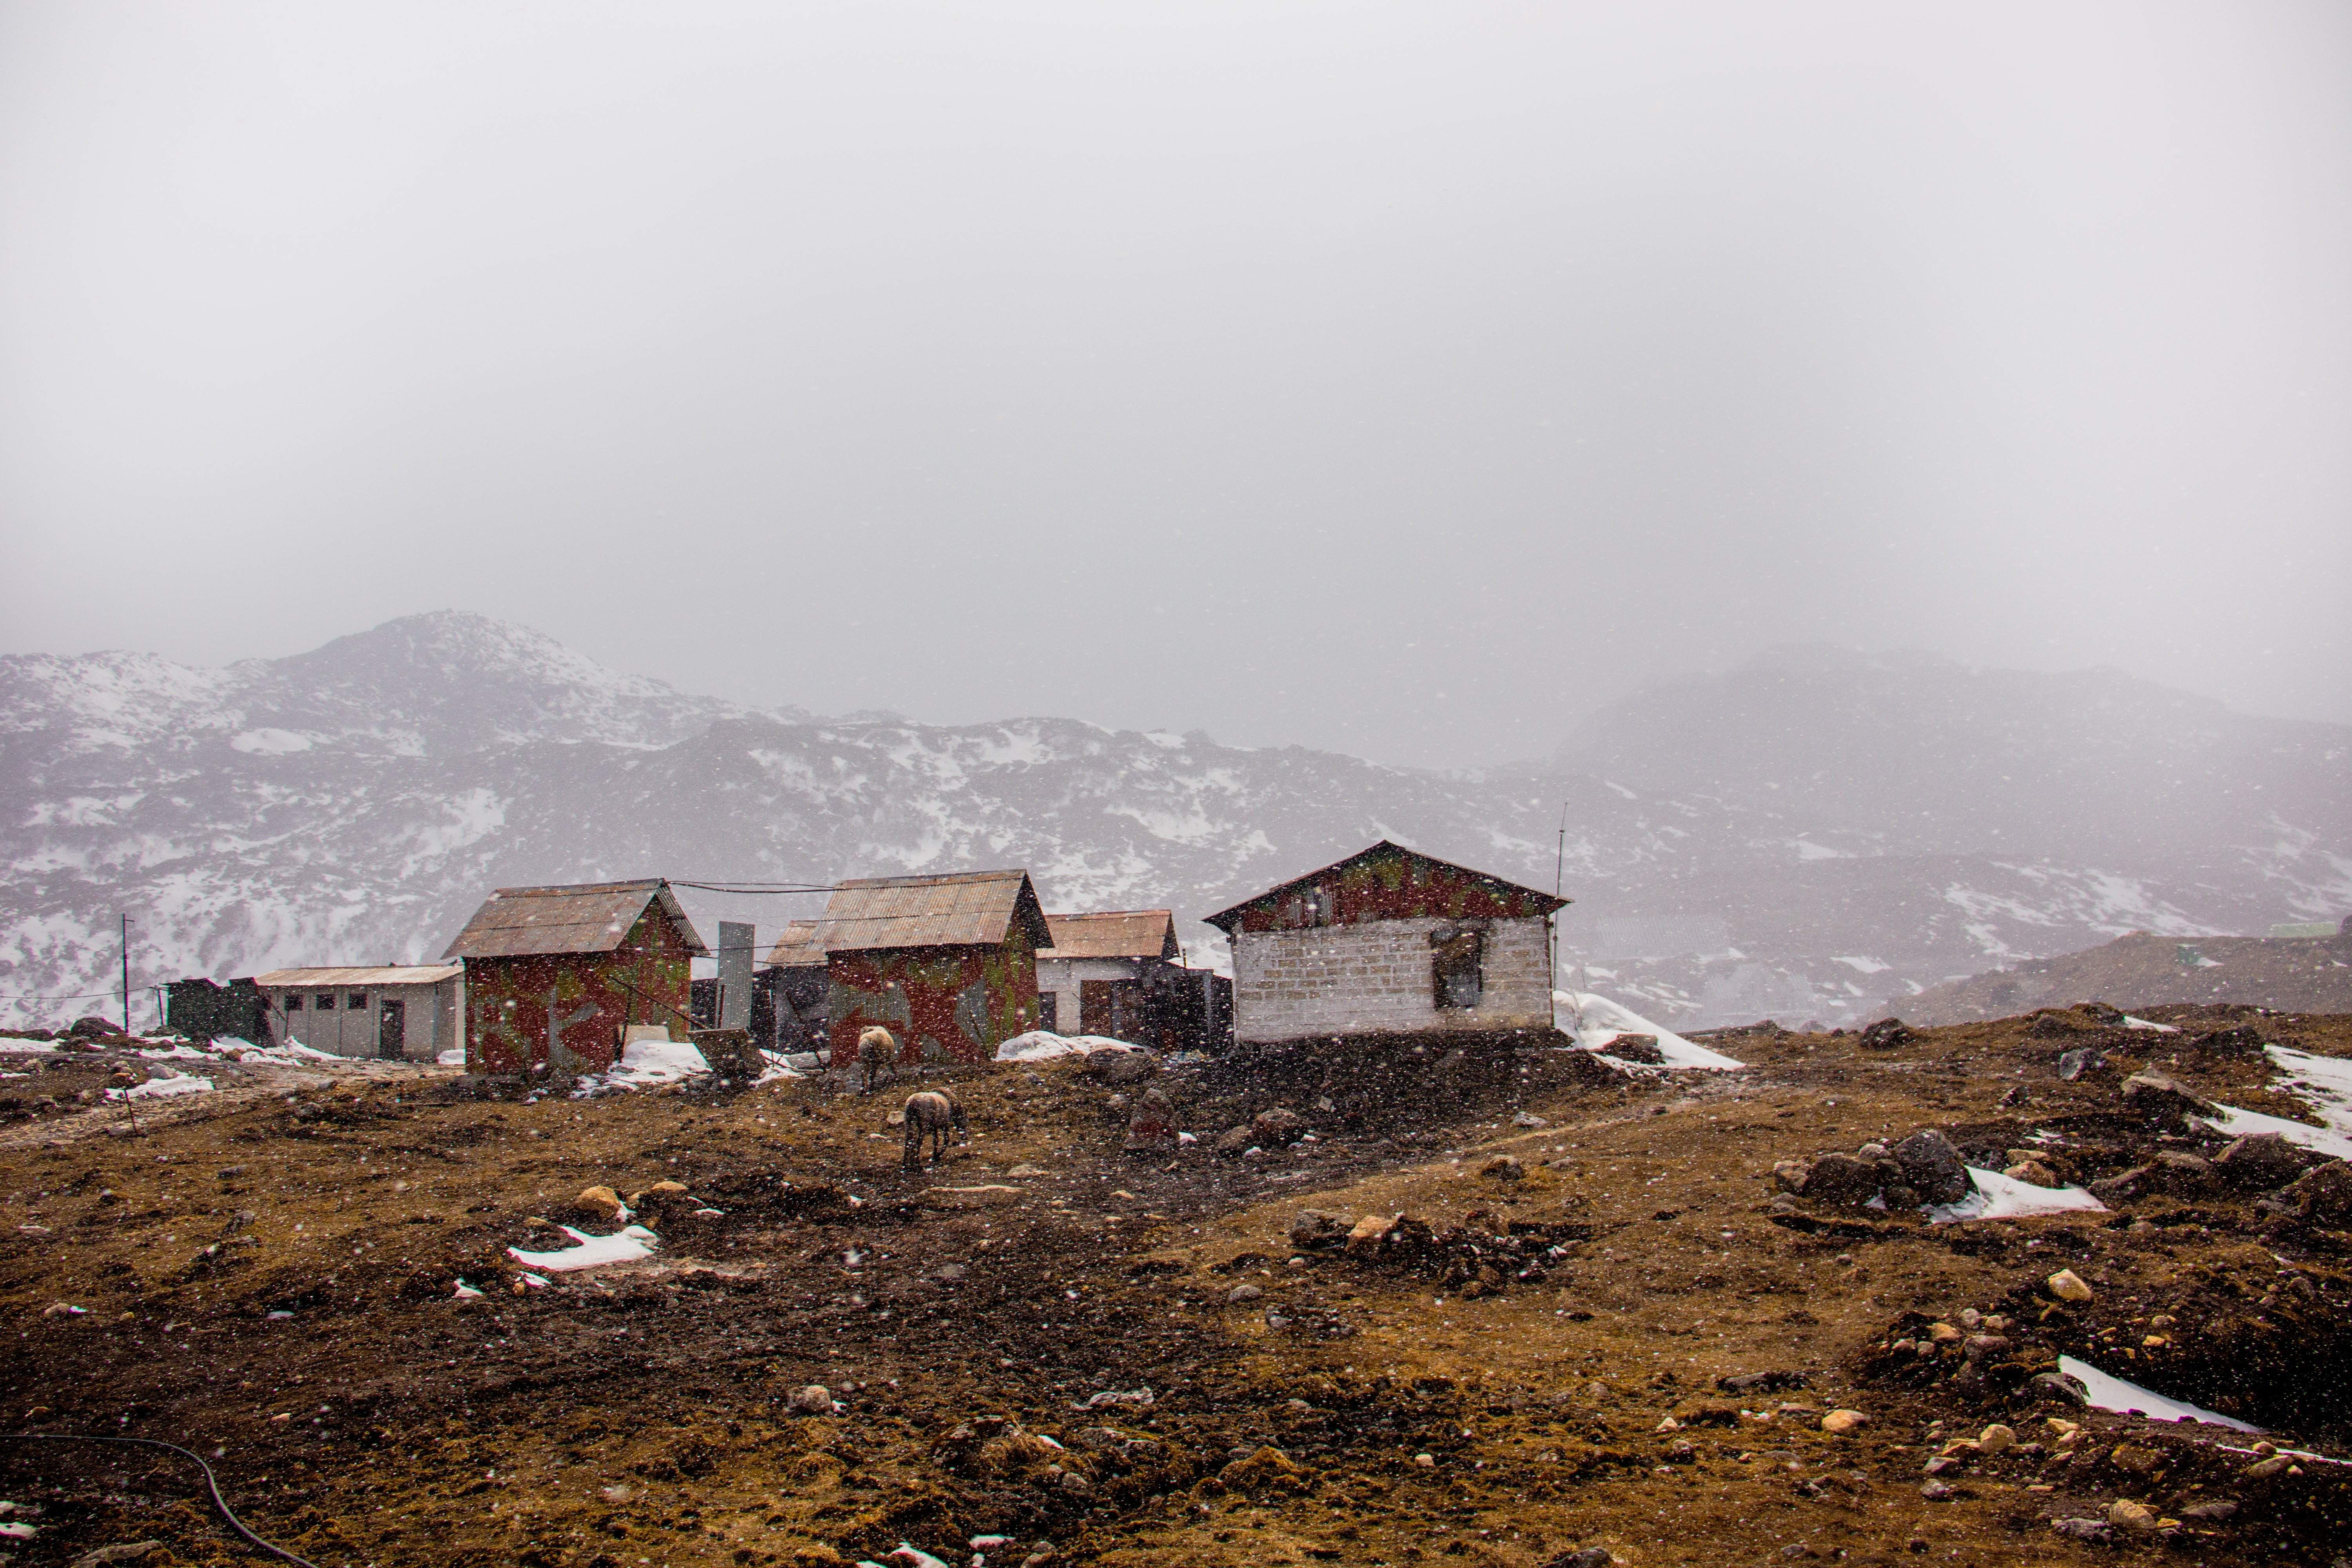 Cabanas em uma colina marrom com neve suave caindo 